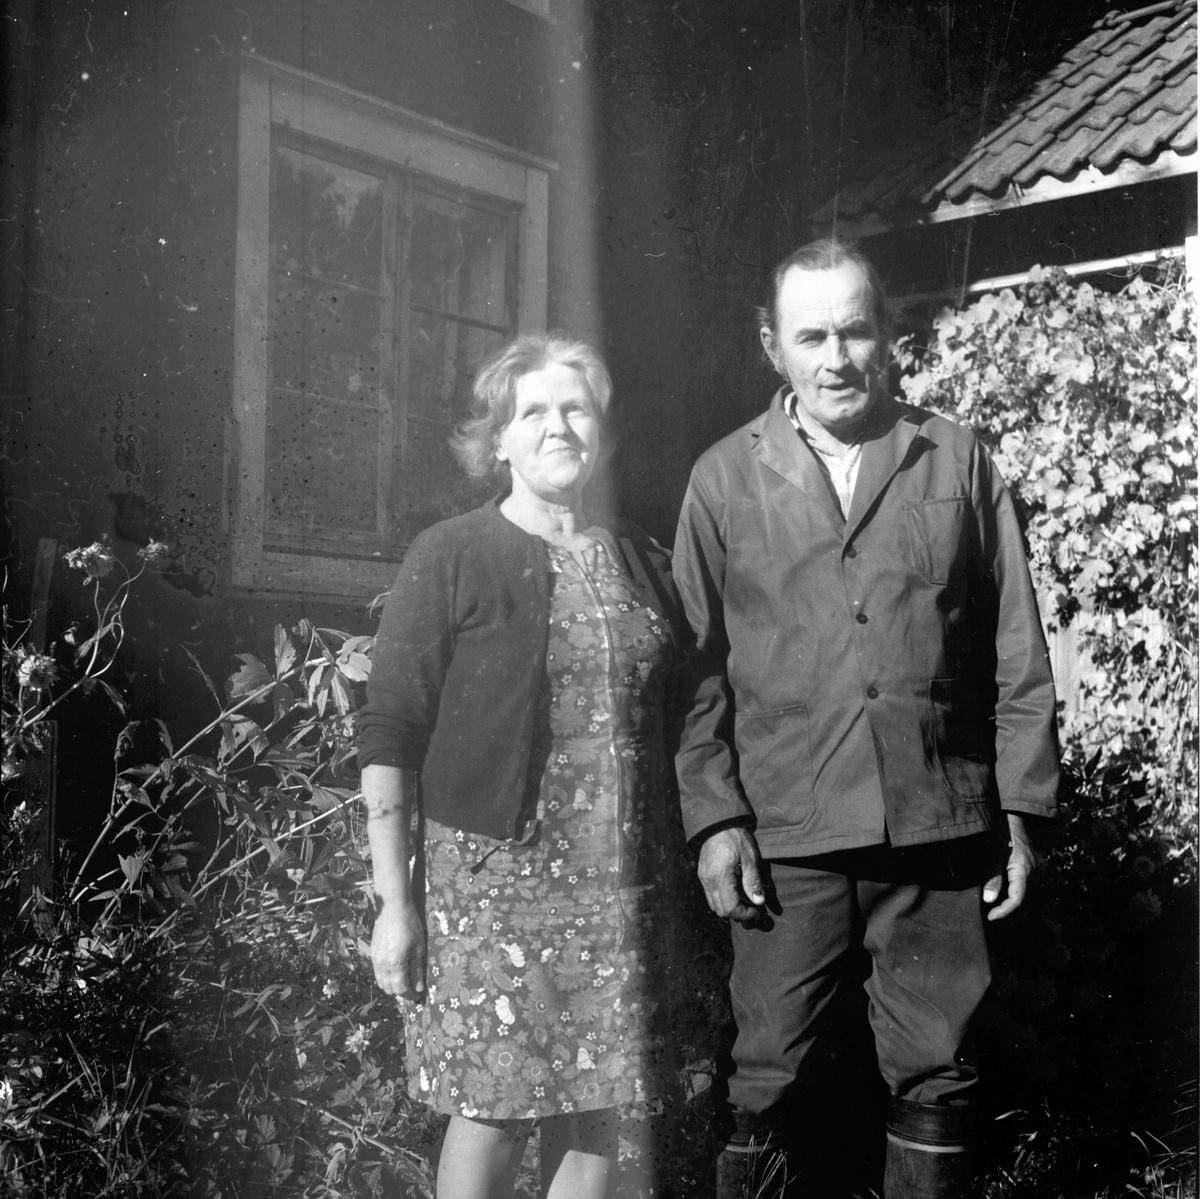 Elin och Holger småbrukare.
Björnbacken
Oktober 1972